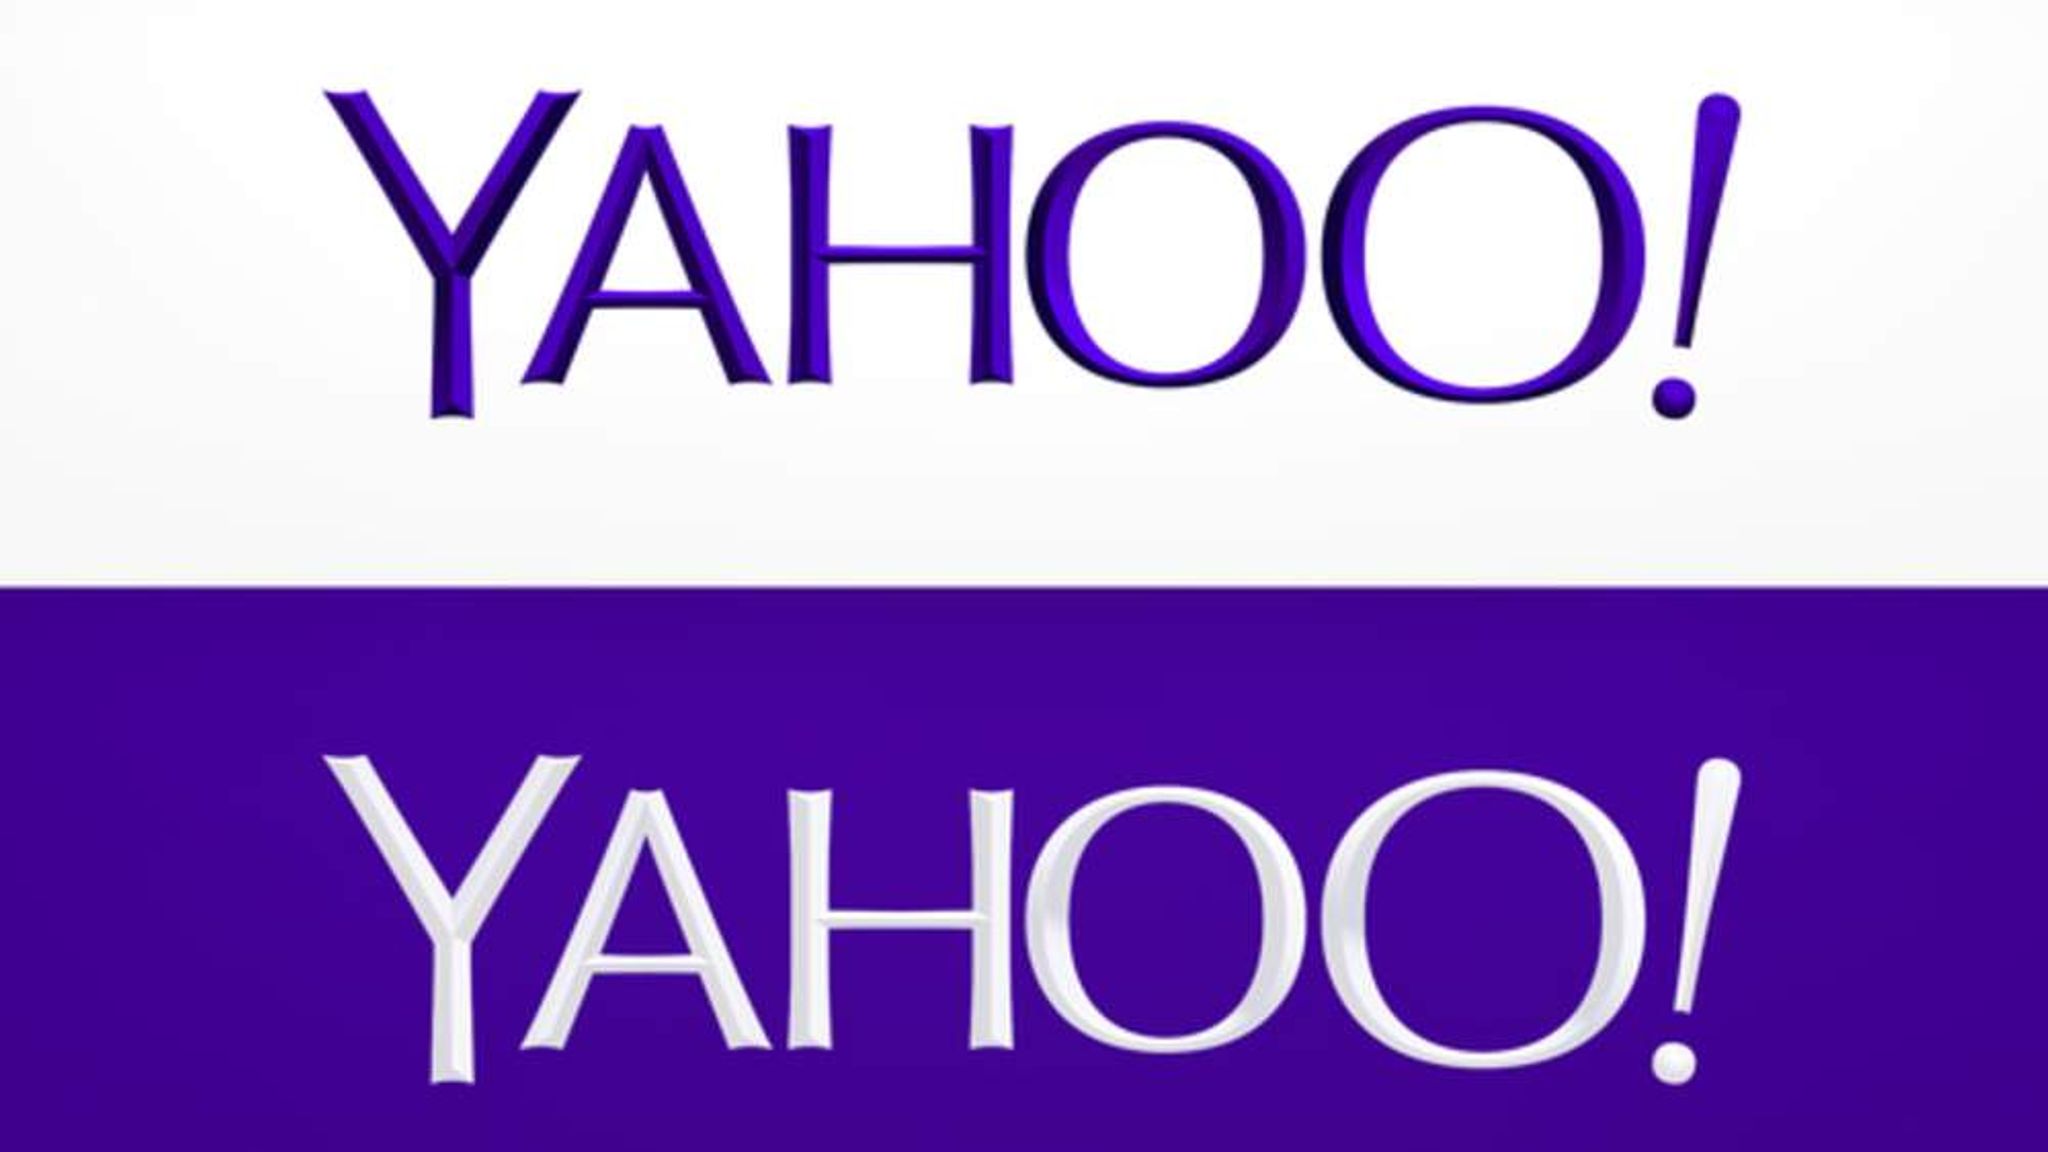 yahoo logo design